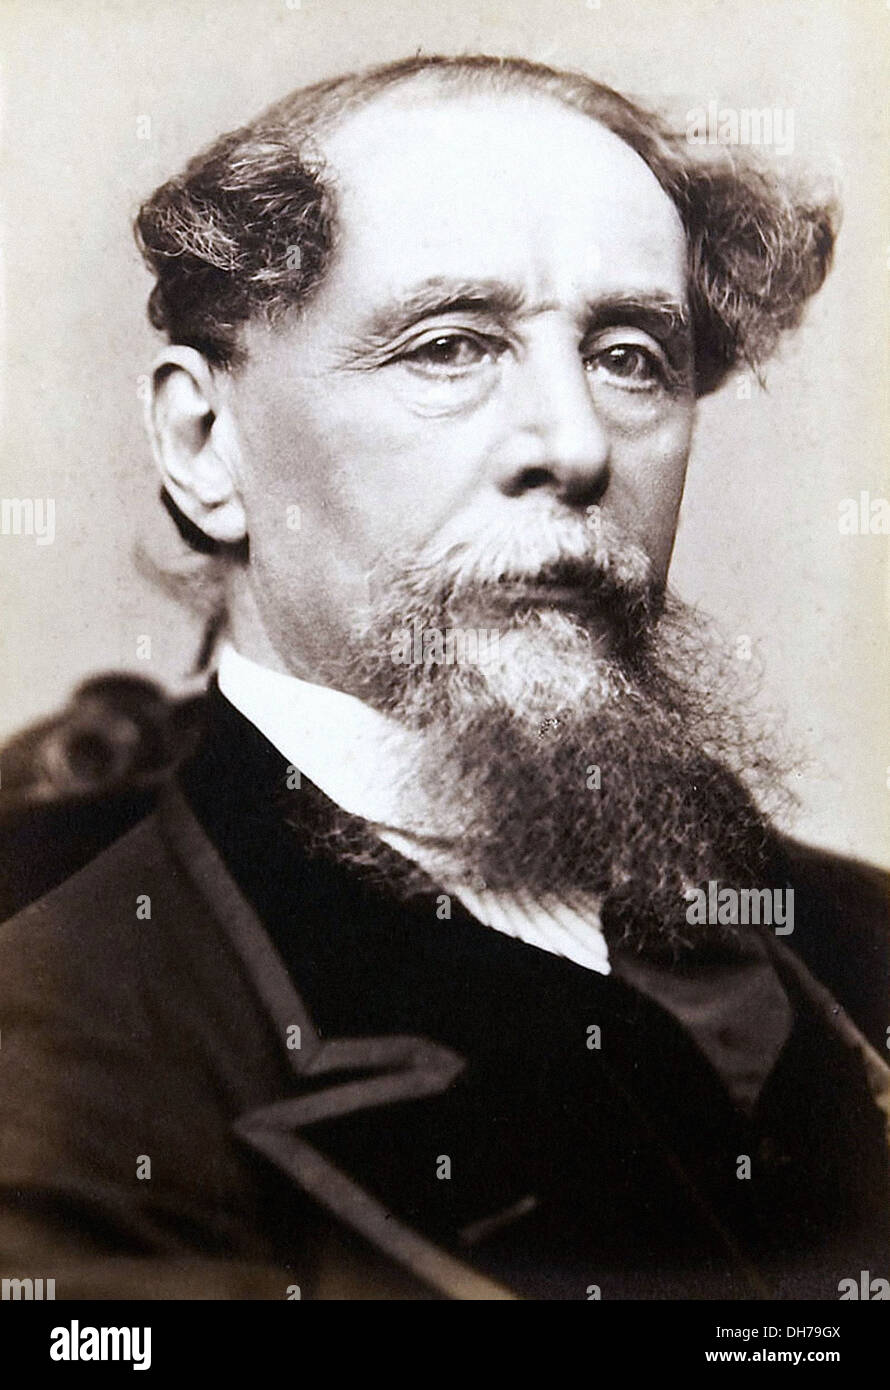 Charles Dickens - 7 de febrero de 1812 - 9 de junio de 1870 - escritor inglés Foto de stock